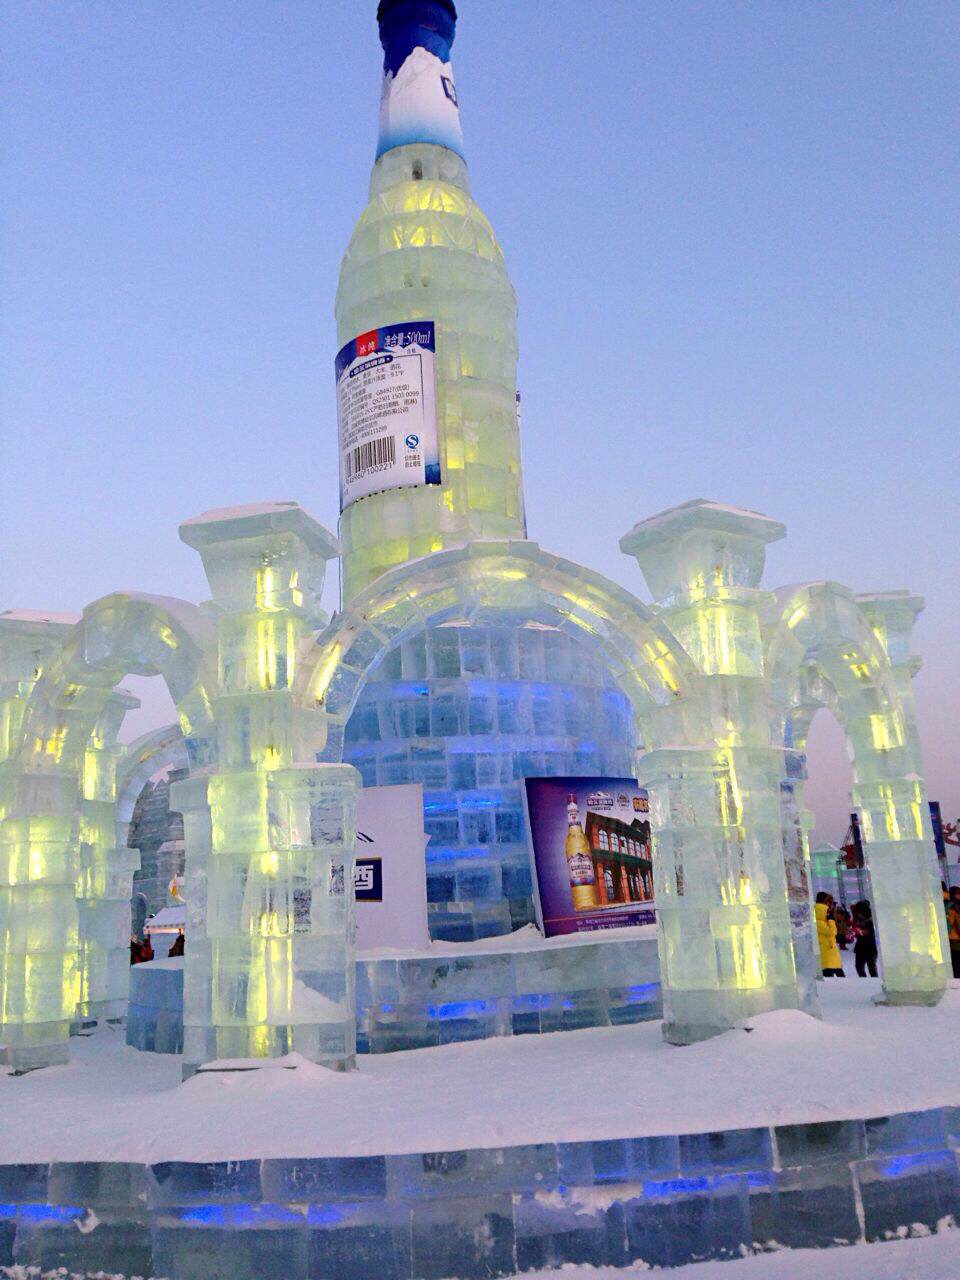 连续两年打卡哈尔滨冰雪大世界